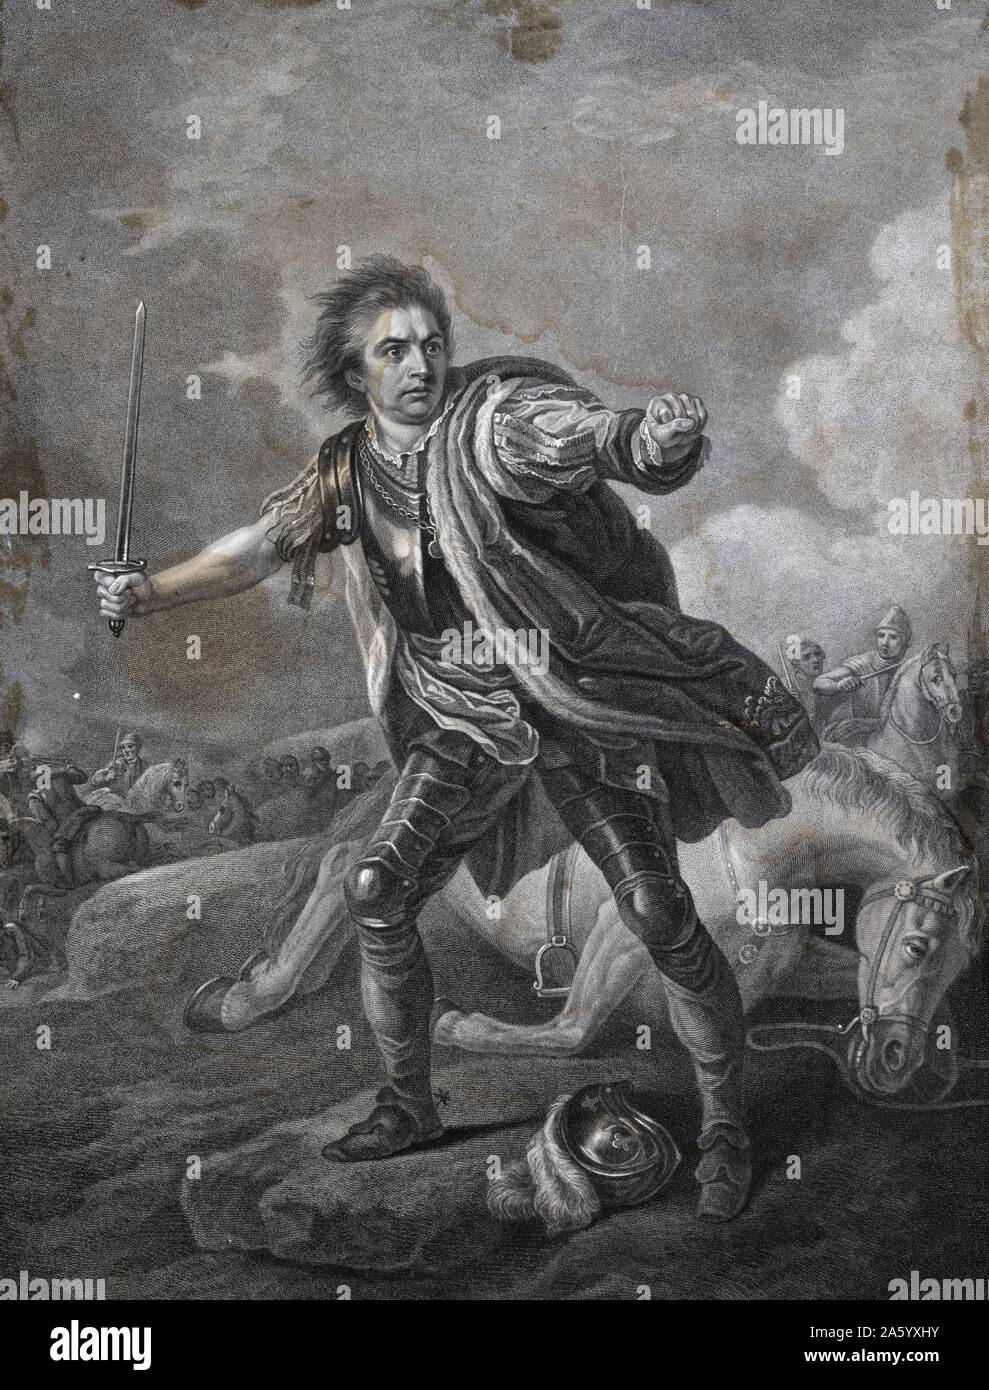 Représentation de l'acteur David Garrick (1717-1779), acteur, dramaturge, directeur de théâtre et producteur, dans le rôle de Richard la troisième au cours de la bataille de Bosworth Field. Datée 1811 Banque D'Images